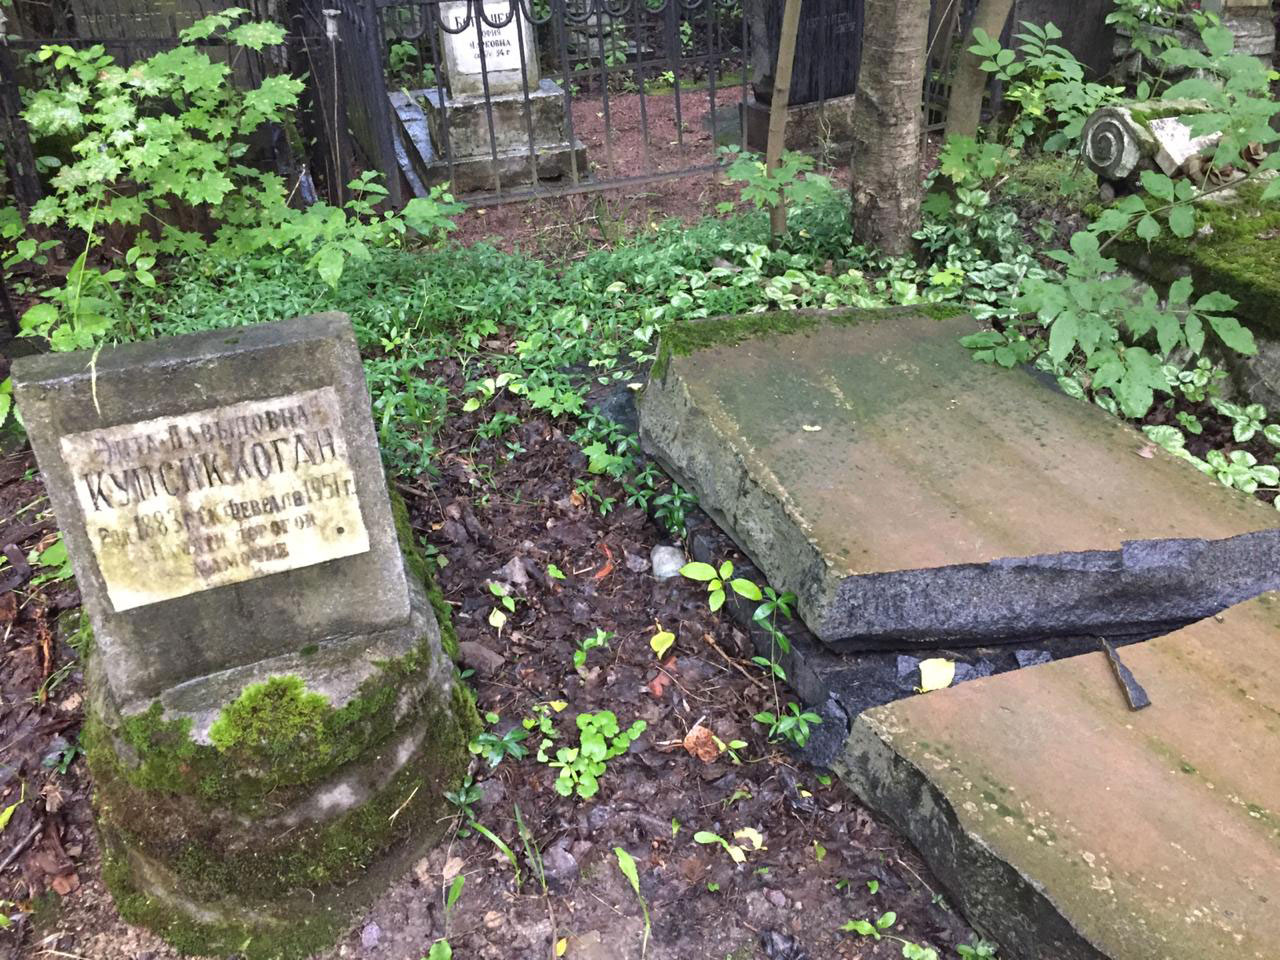 еврейское кладбище воронеж фото